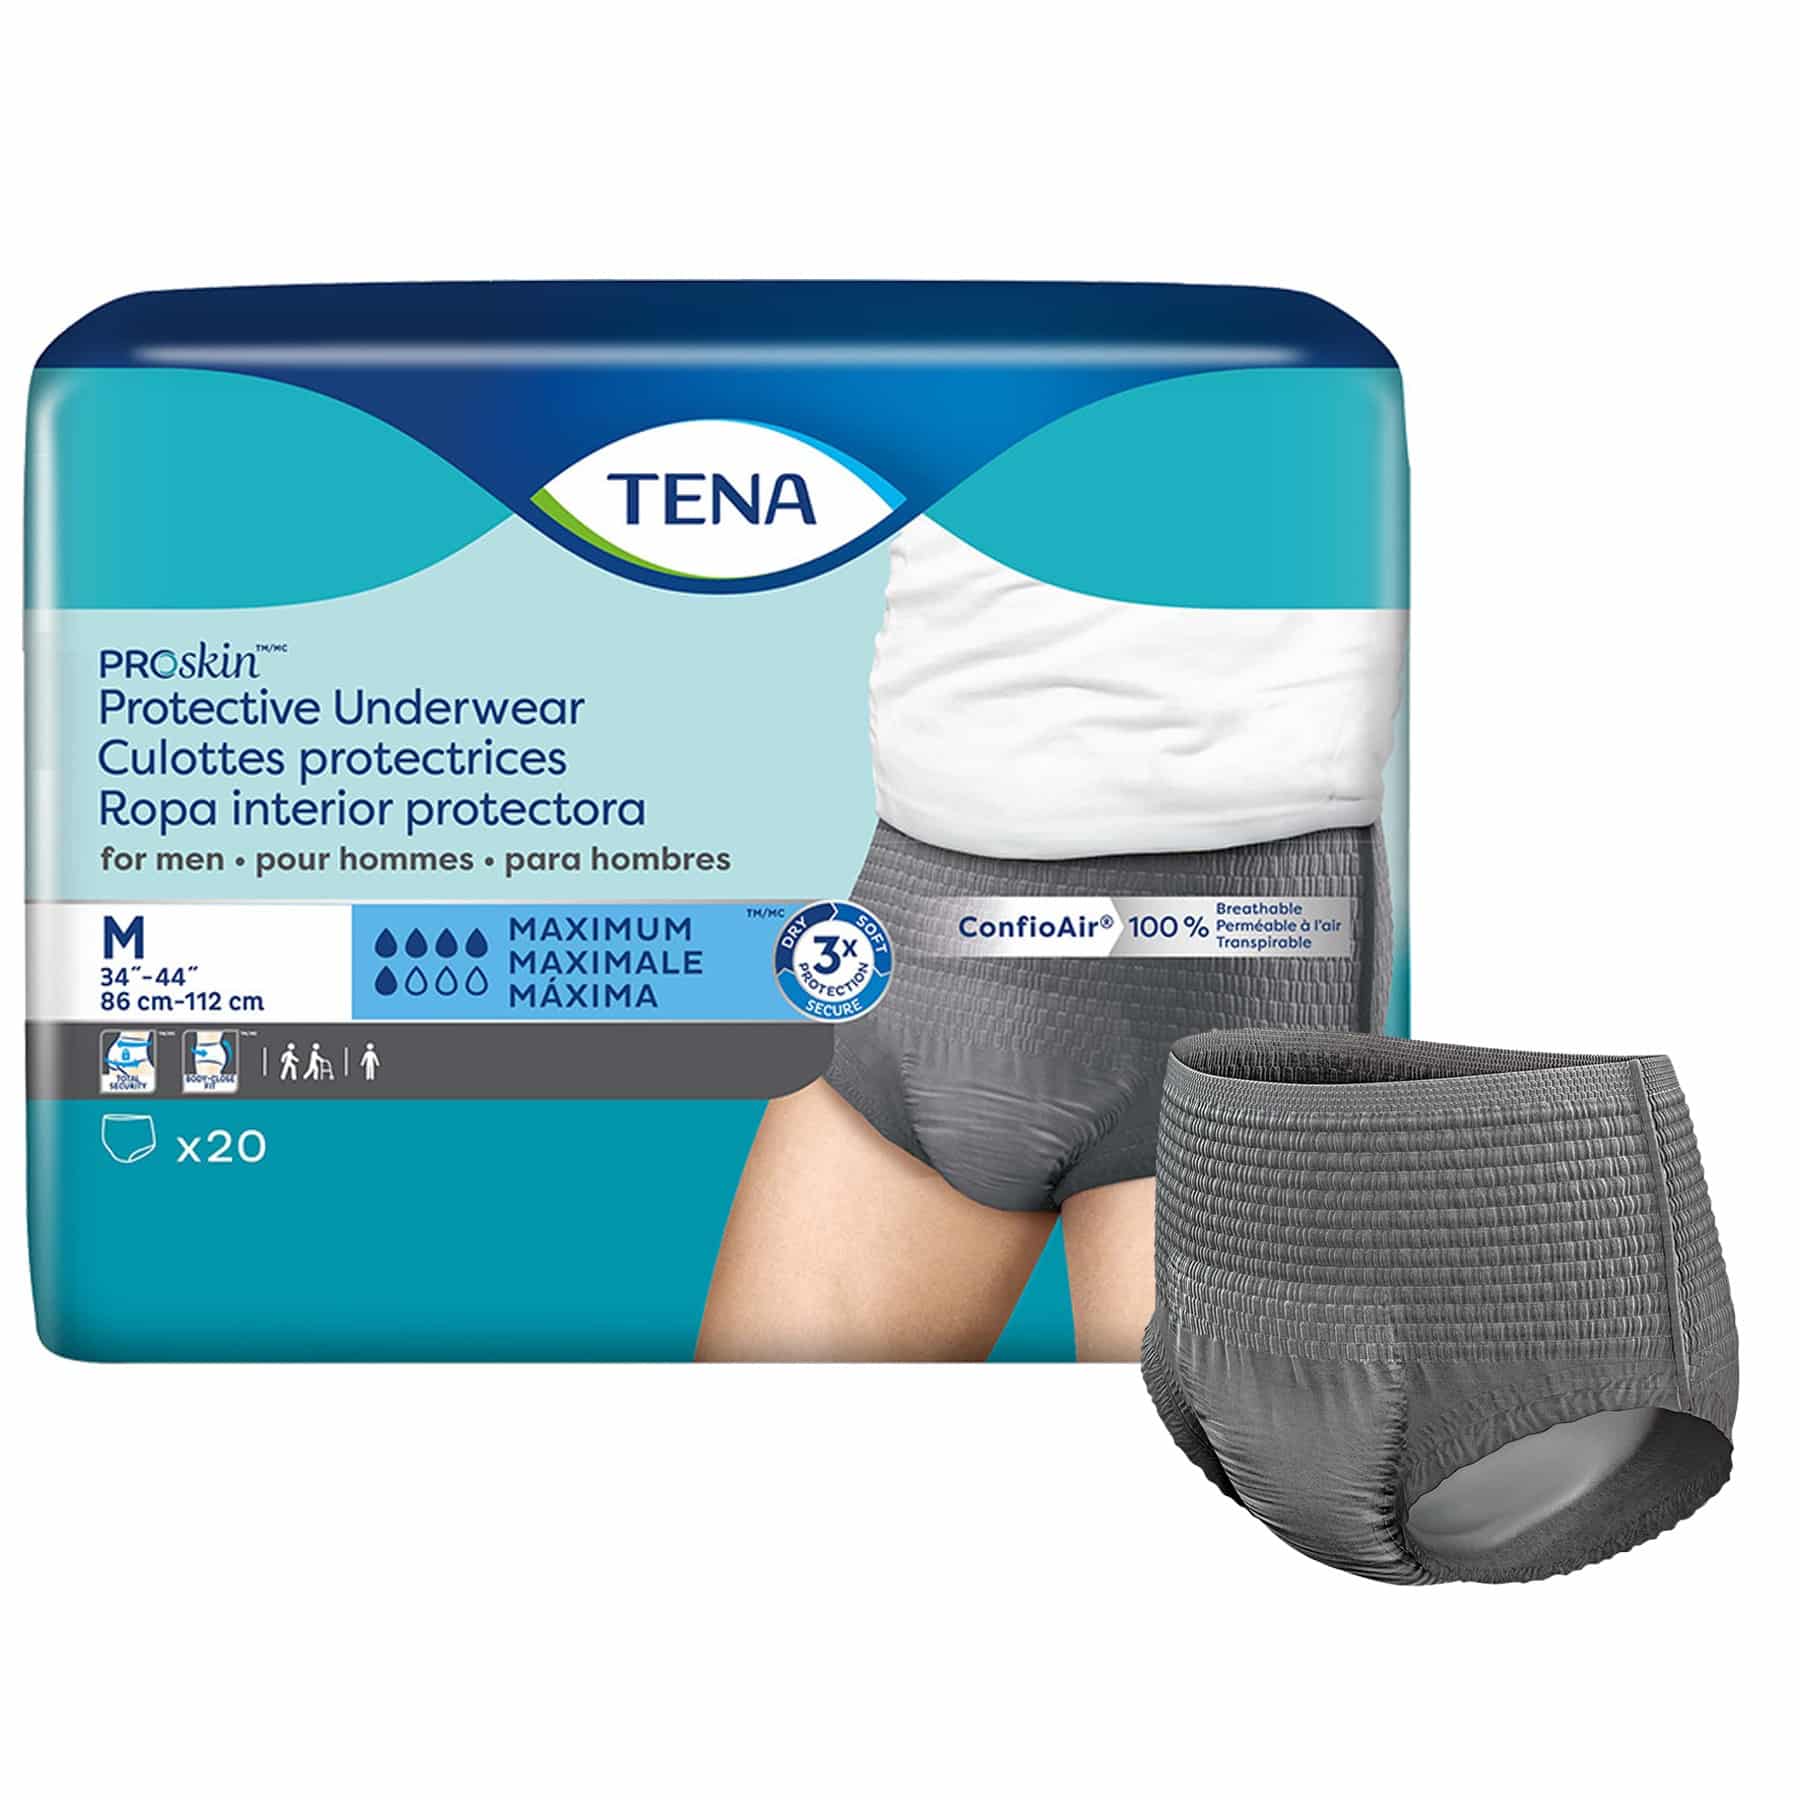 TENA ProSkin Underwear For Men With Maximum Absorbency | Essity ...